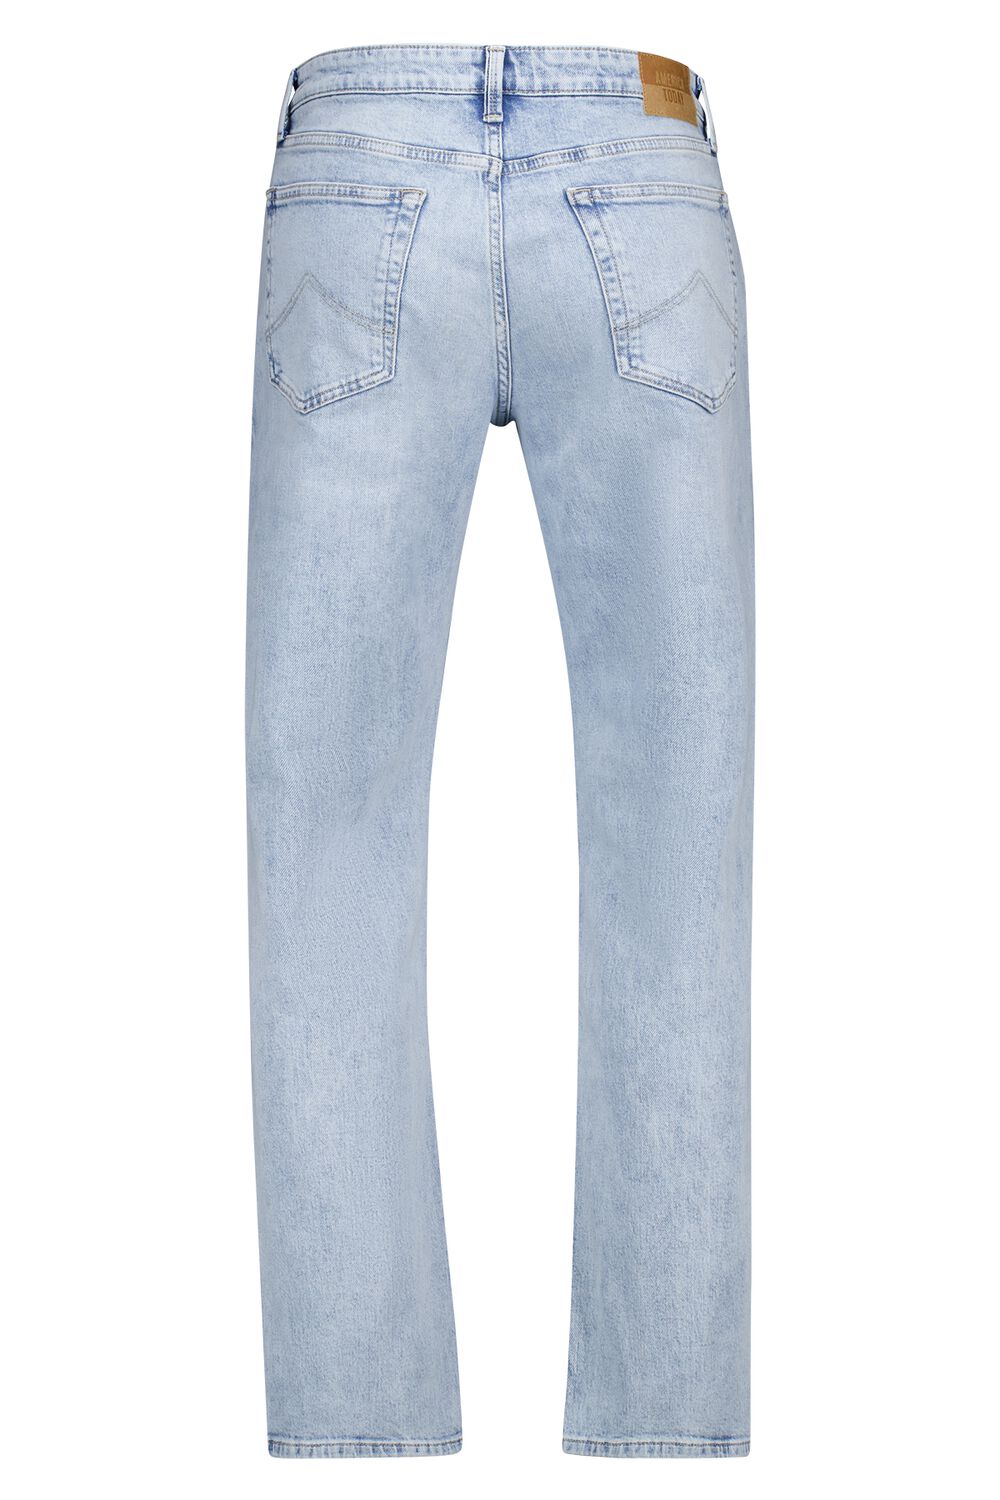 America Today Heren Jeans Dexter S24 Blauw